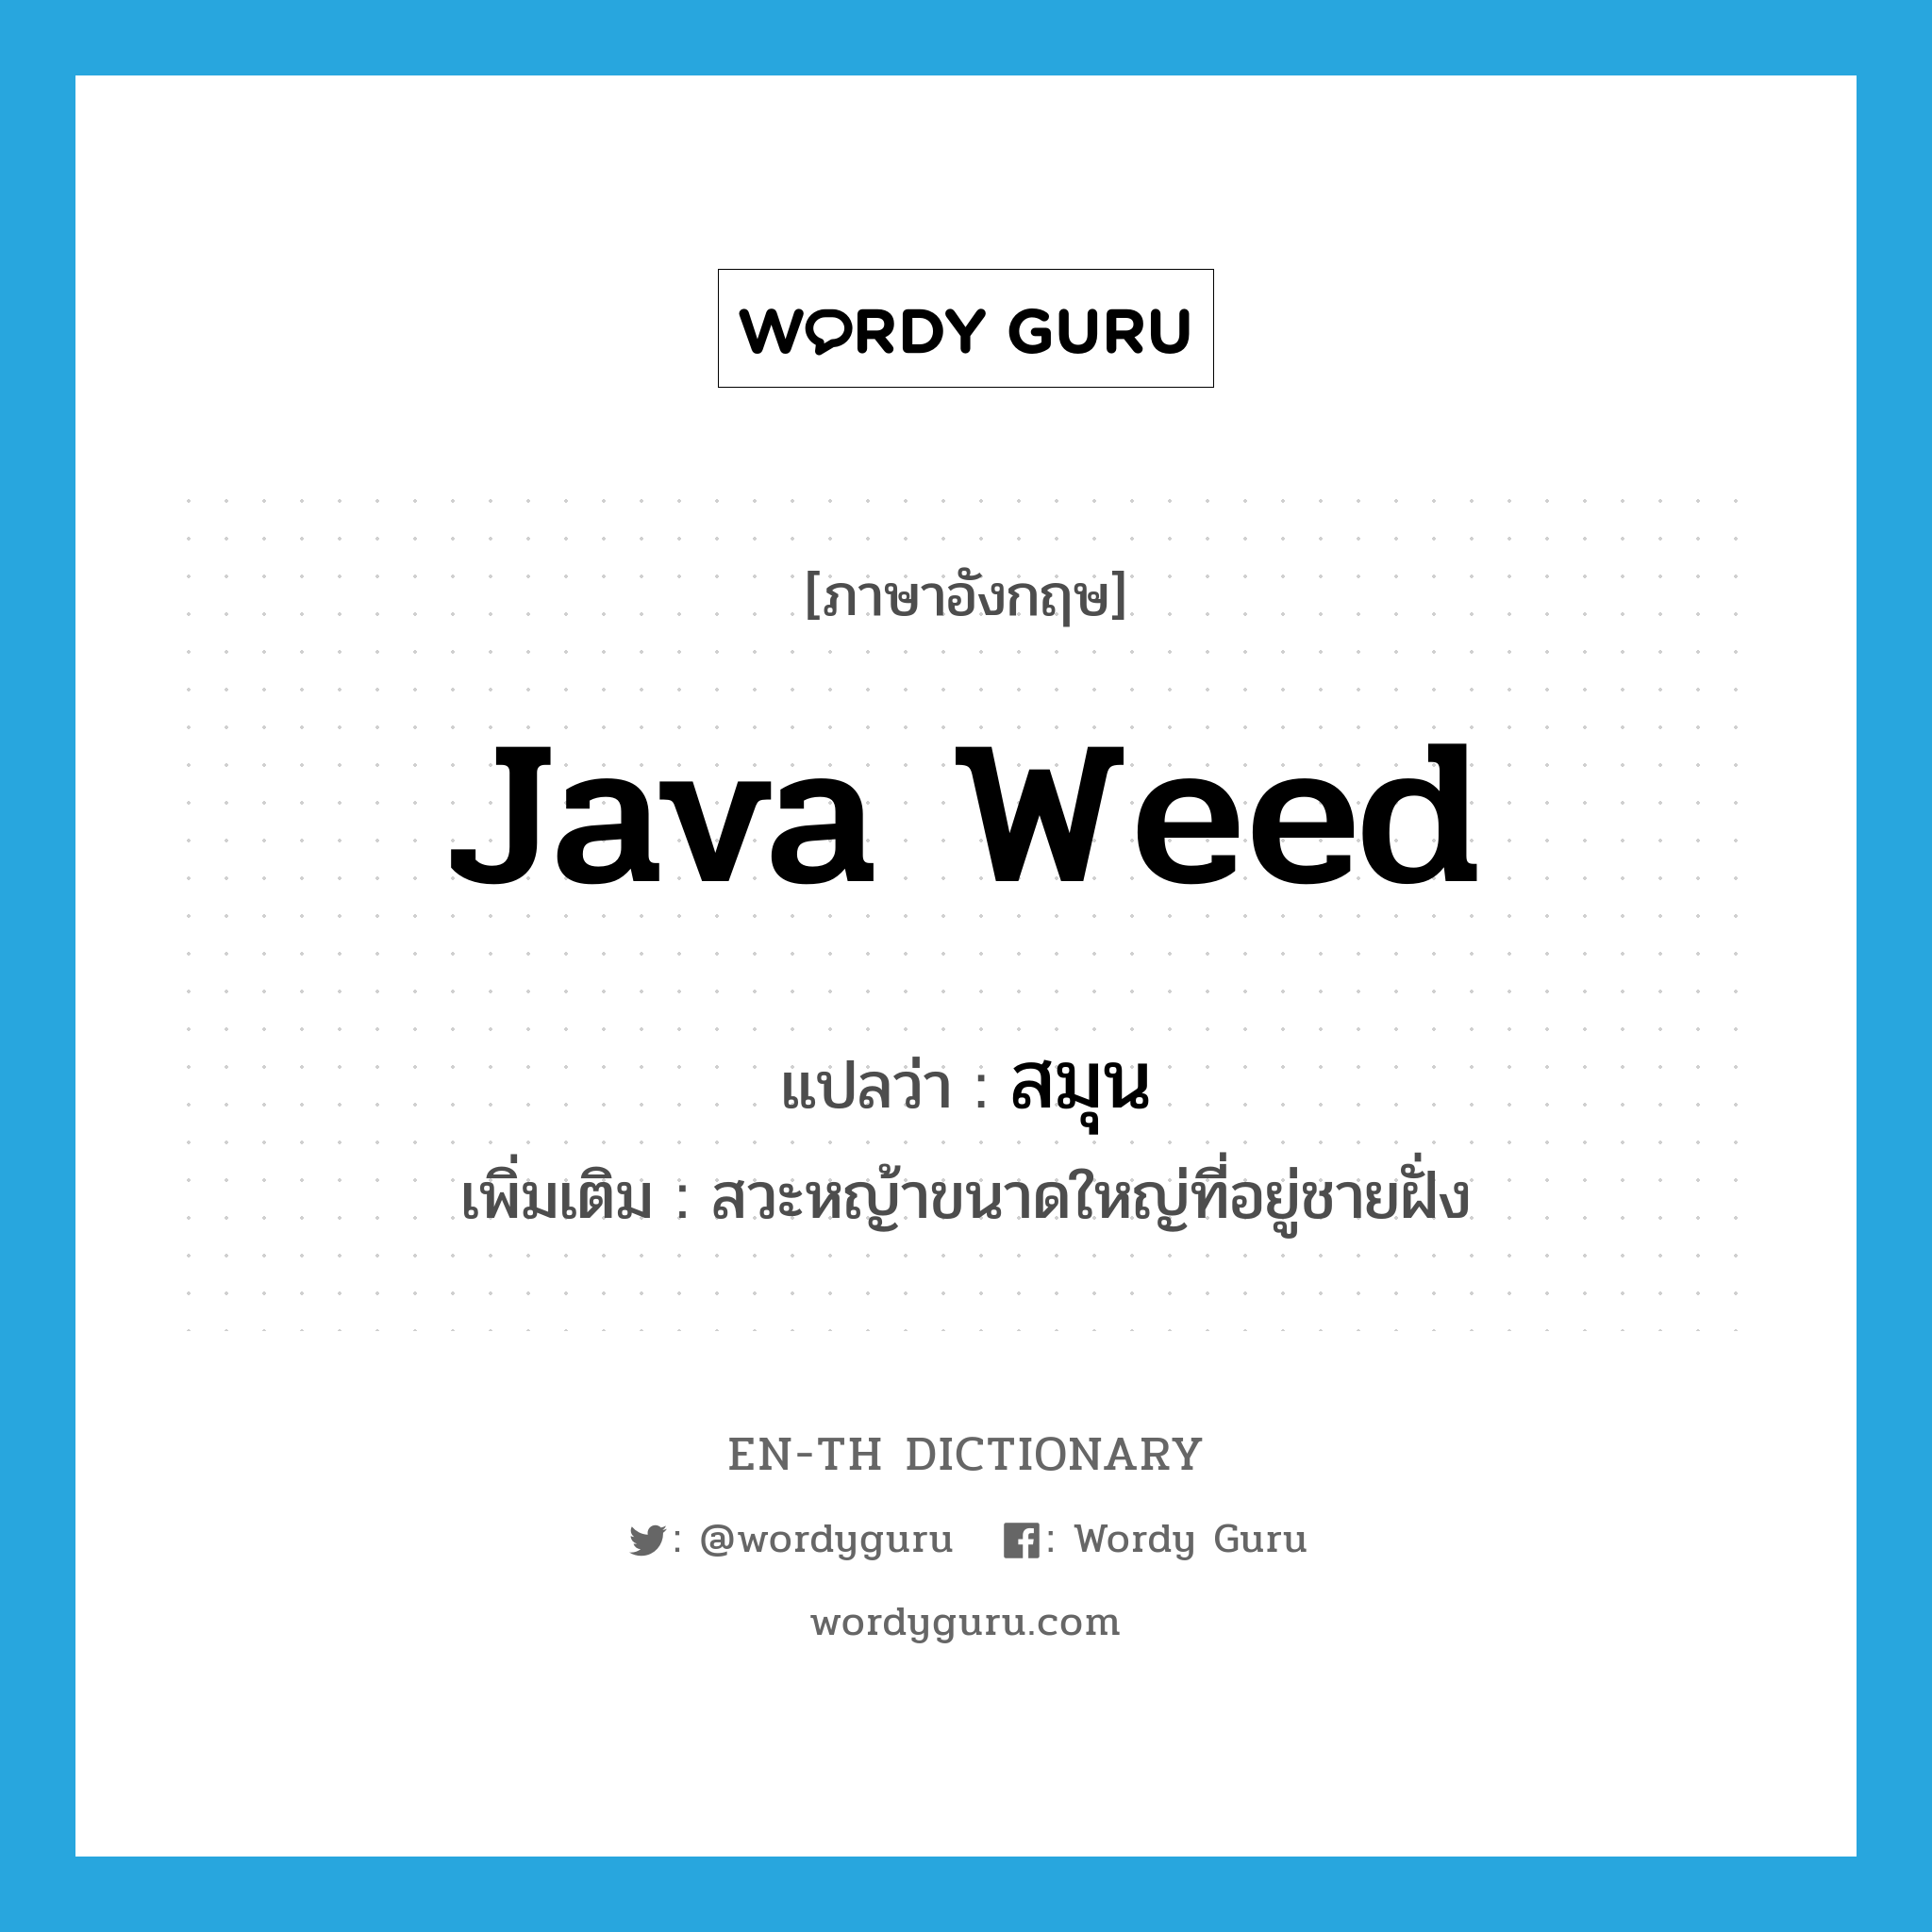 Java weed แปลว่า?, คำศัพท์ภาษาอังกฤษ Java weed แปลว่า สมุน ประเภท N เพิ่มเติม สวะหญ้าขนาดใหญ่ที่อยู่ชายฝั่ง หมวด N